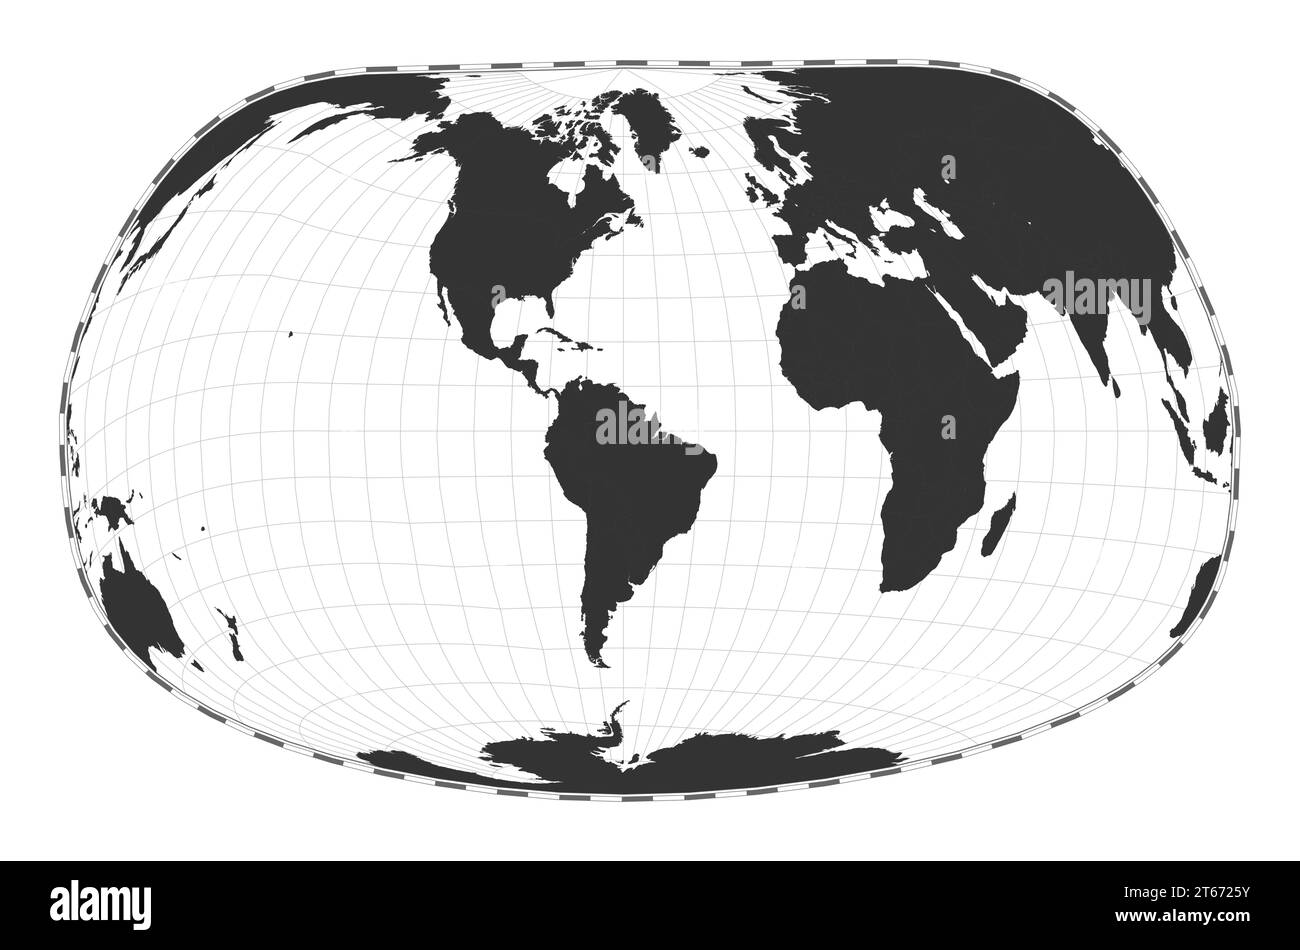 Vektor-Weltkarte. Jacques Bertins Projektion von 1953. Einfache geografische Weltkarte mit Breiten- und Längengraden. Zentriert auf 60 Grad E Länge. Vec Stock Vektor